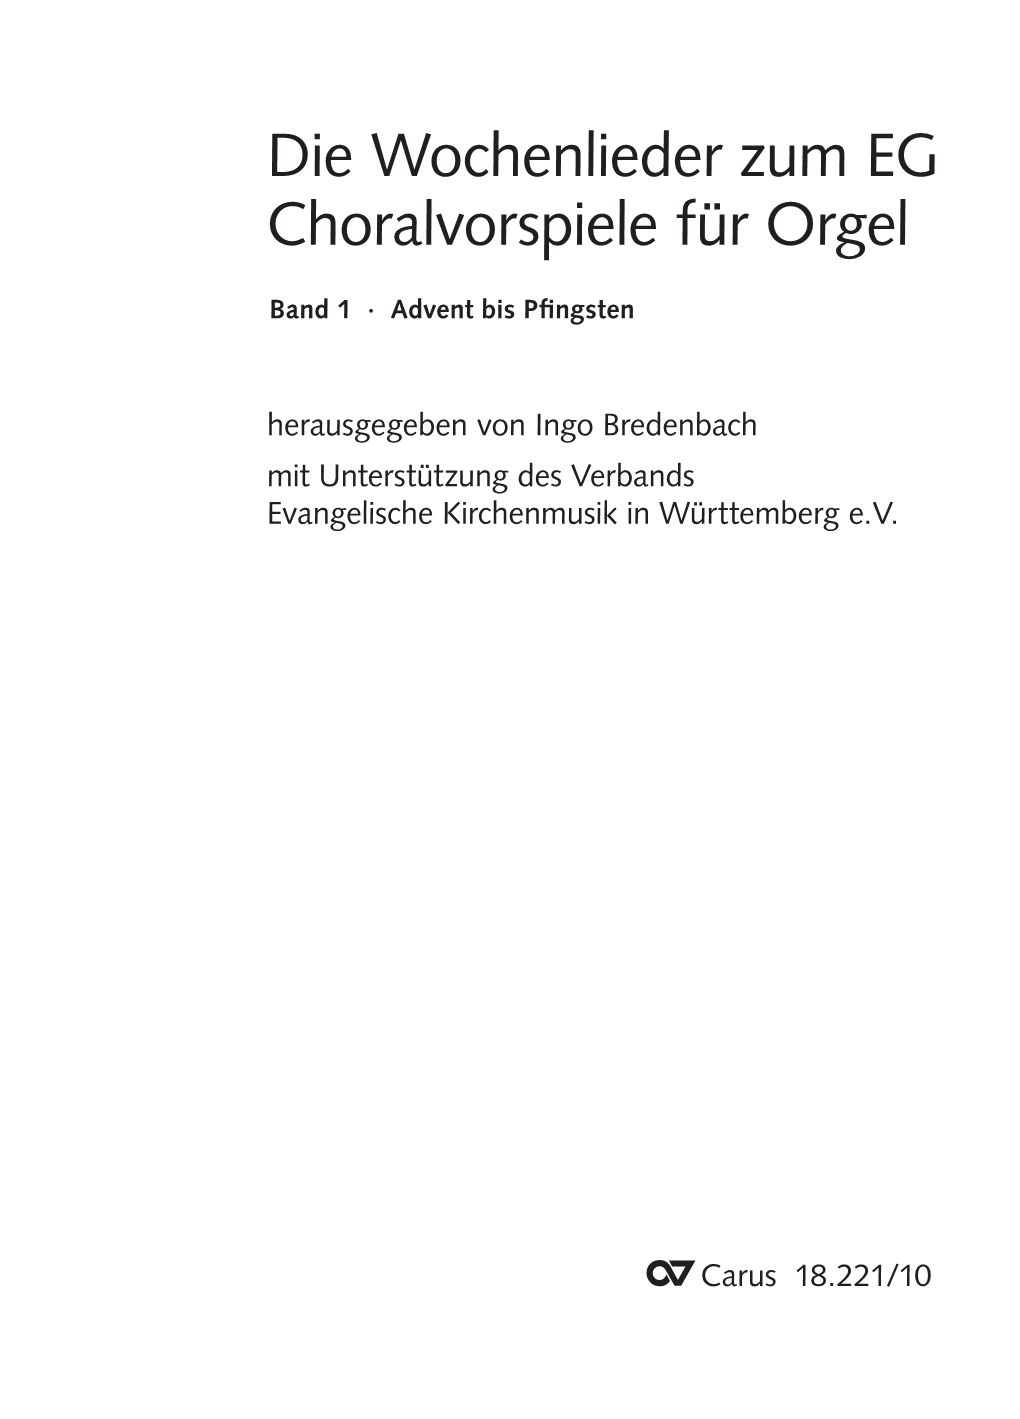 Die Wochenlieder Zum EG Choralvorspiele Für Orgel